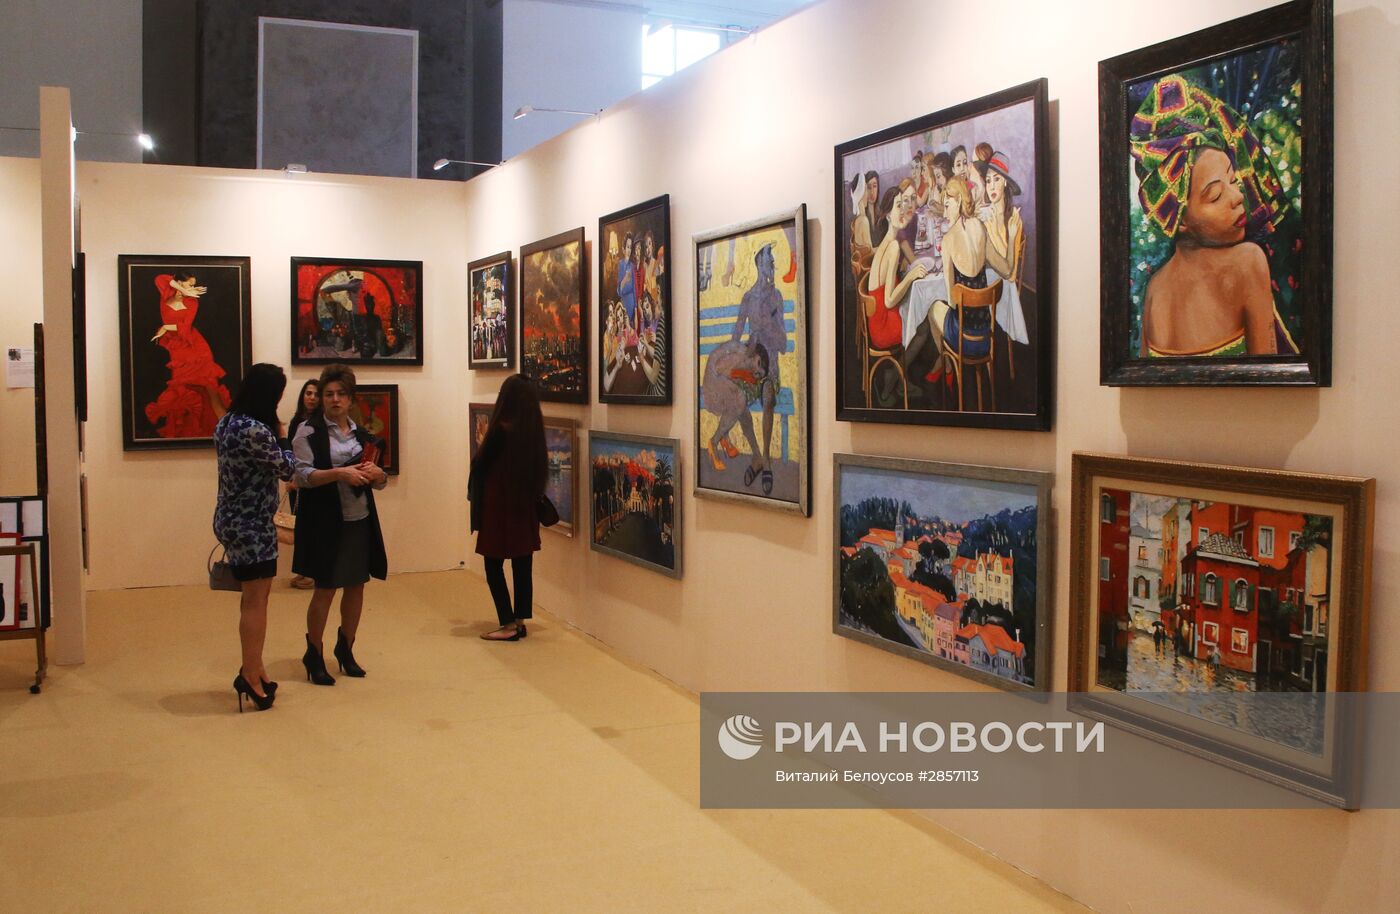 Открытие X Юбилейного международного фестиваля изобразительных искусств "Традиции и современность"